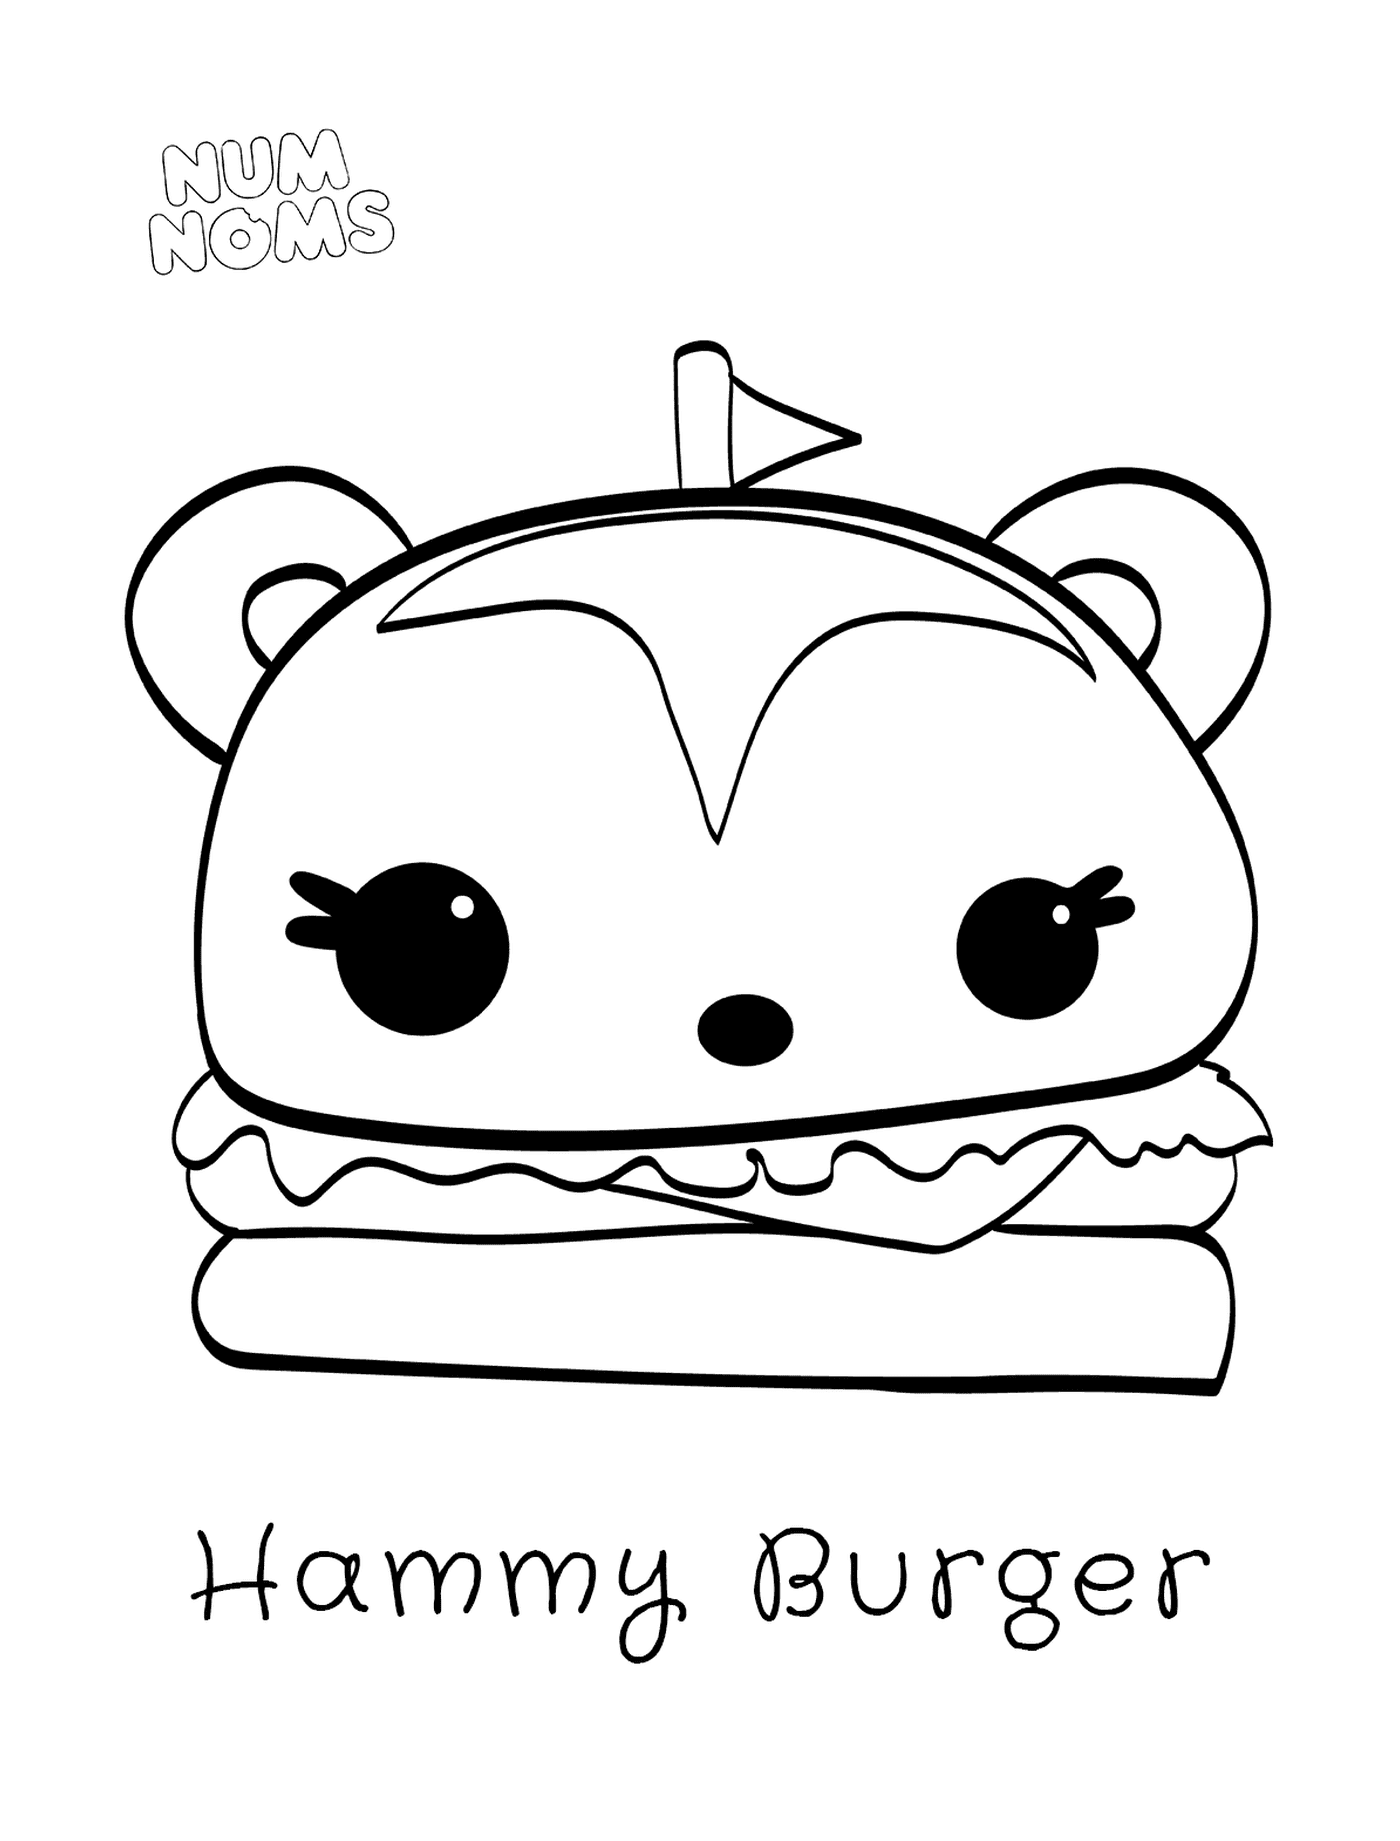  अजीब जानवरों का बर्गर 